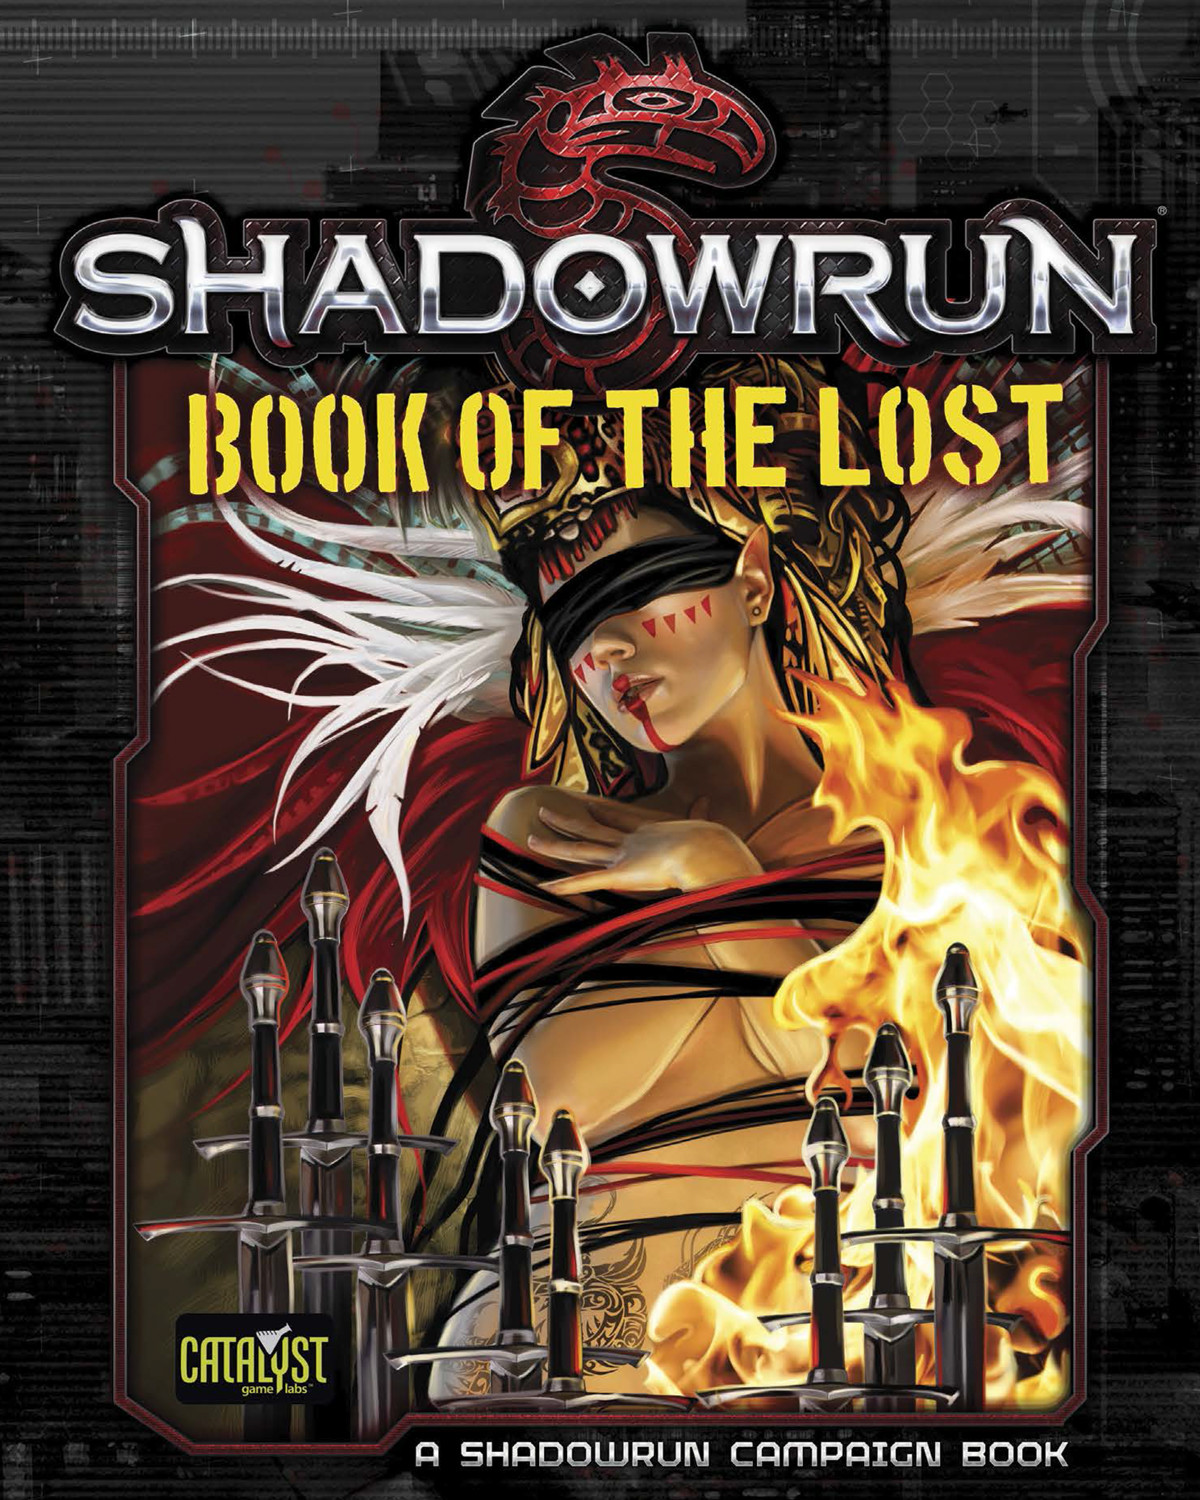 Shadowrun Runner's Toolkit: Alphaware - Shadowrun 5